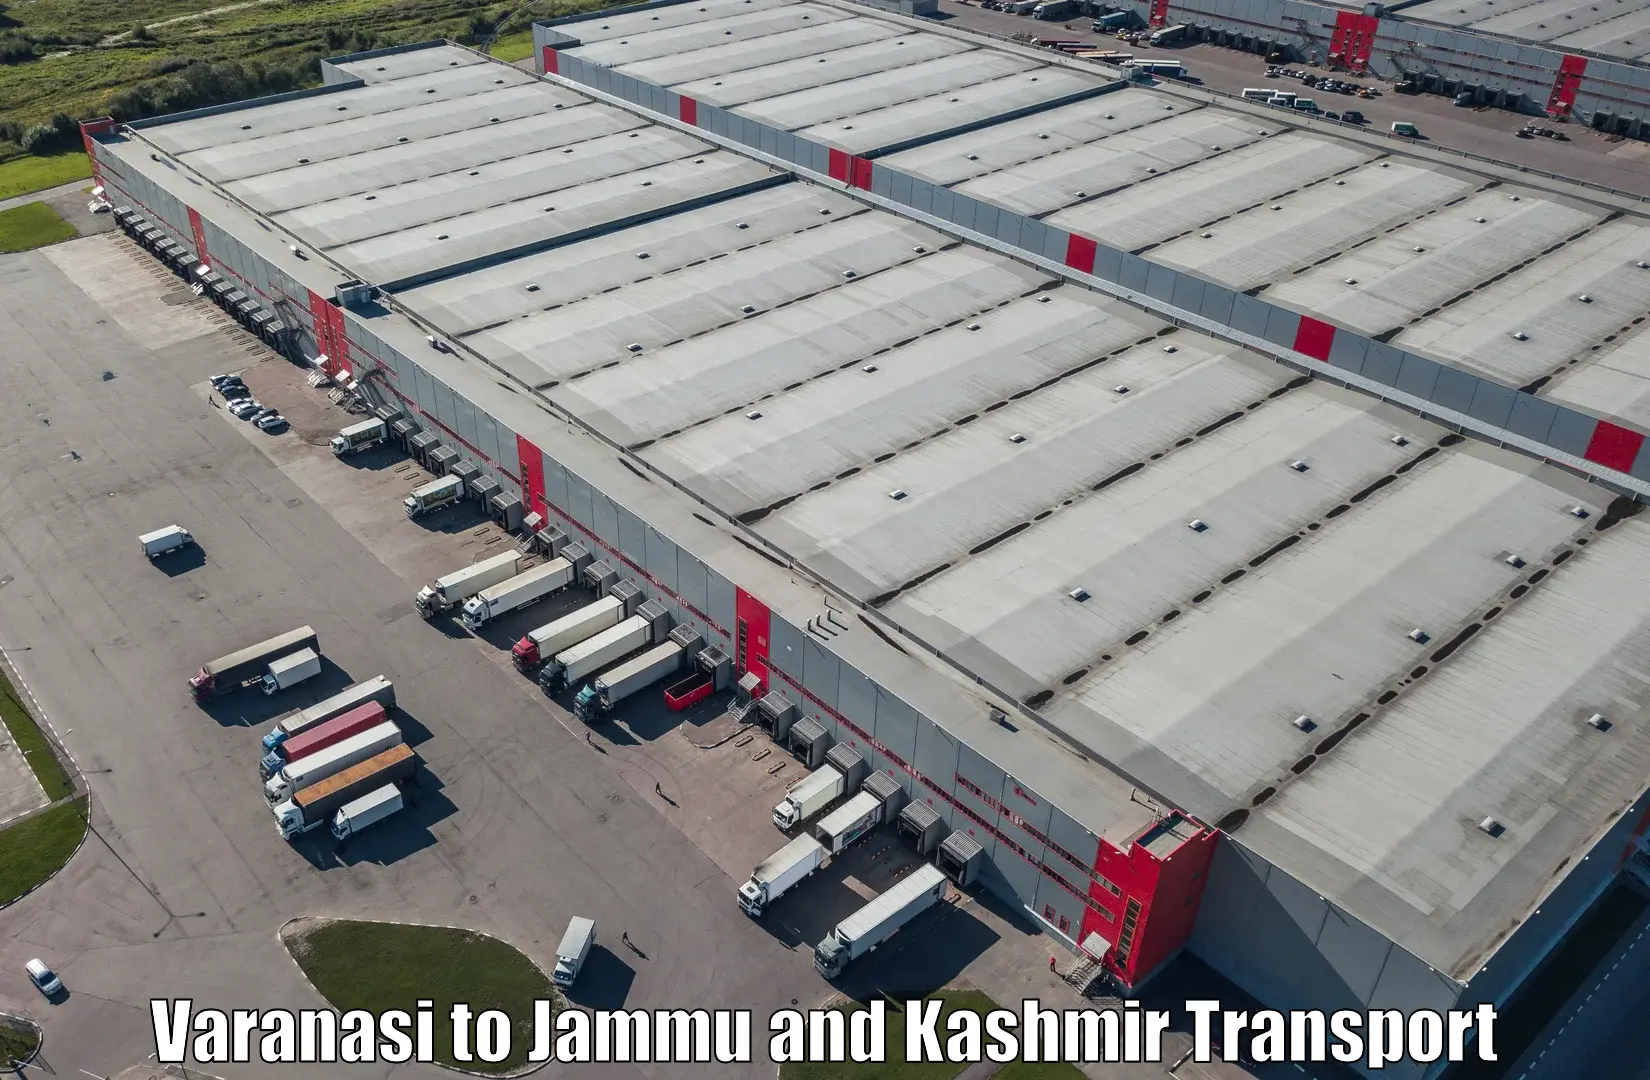 Cargo train transport services Varanasi to Srinagar Kashmir